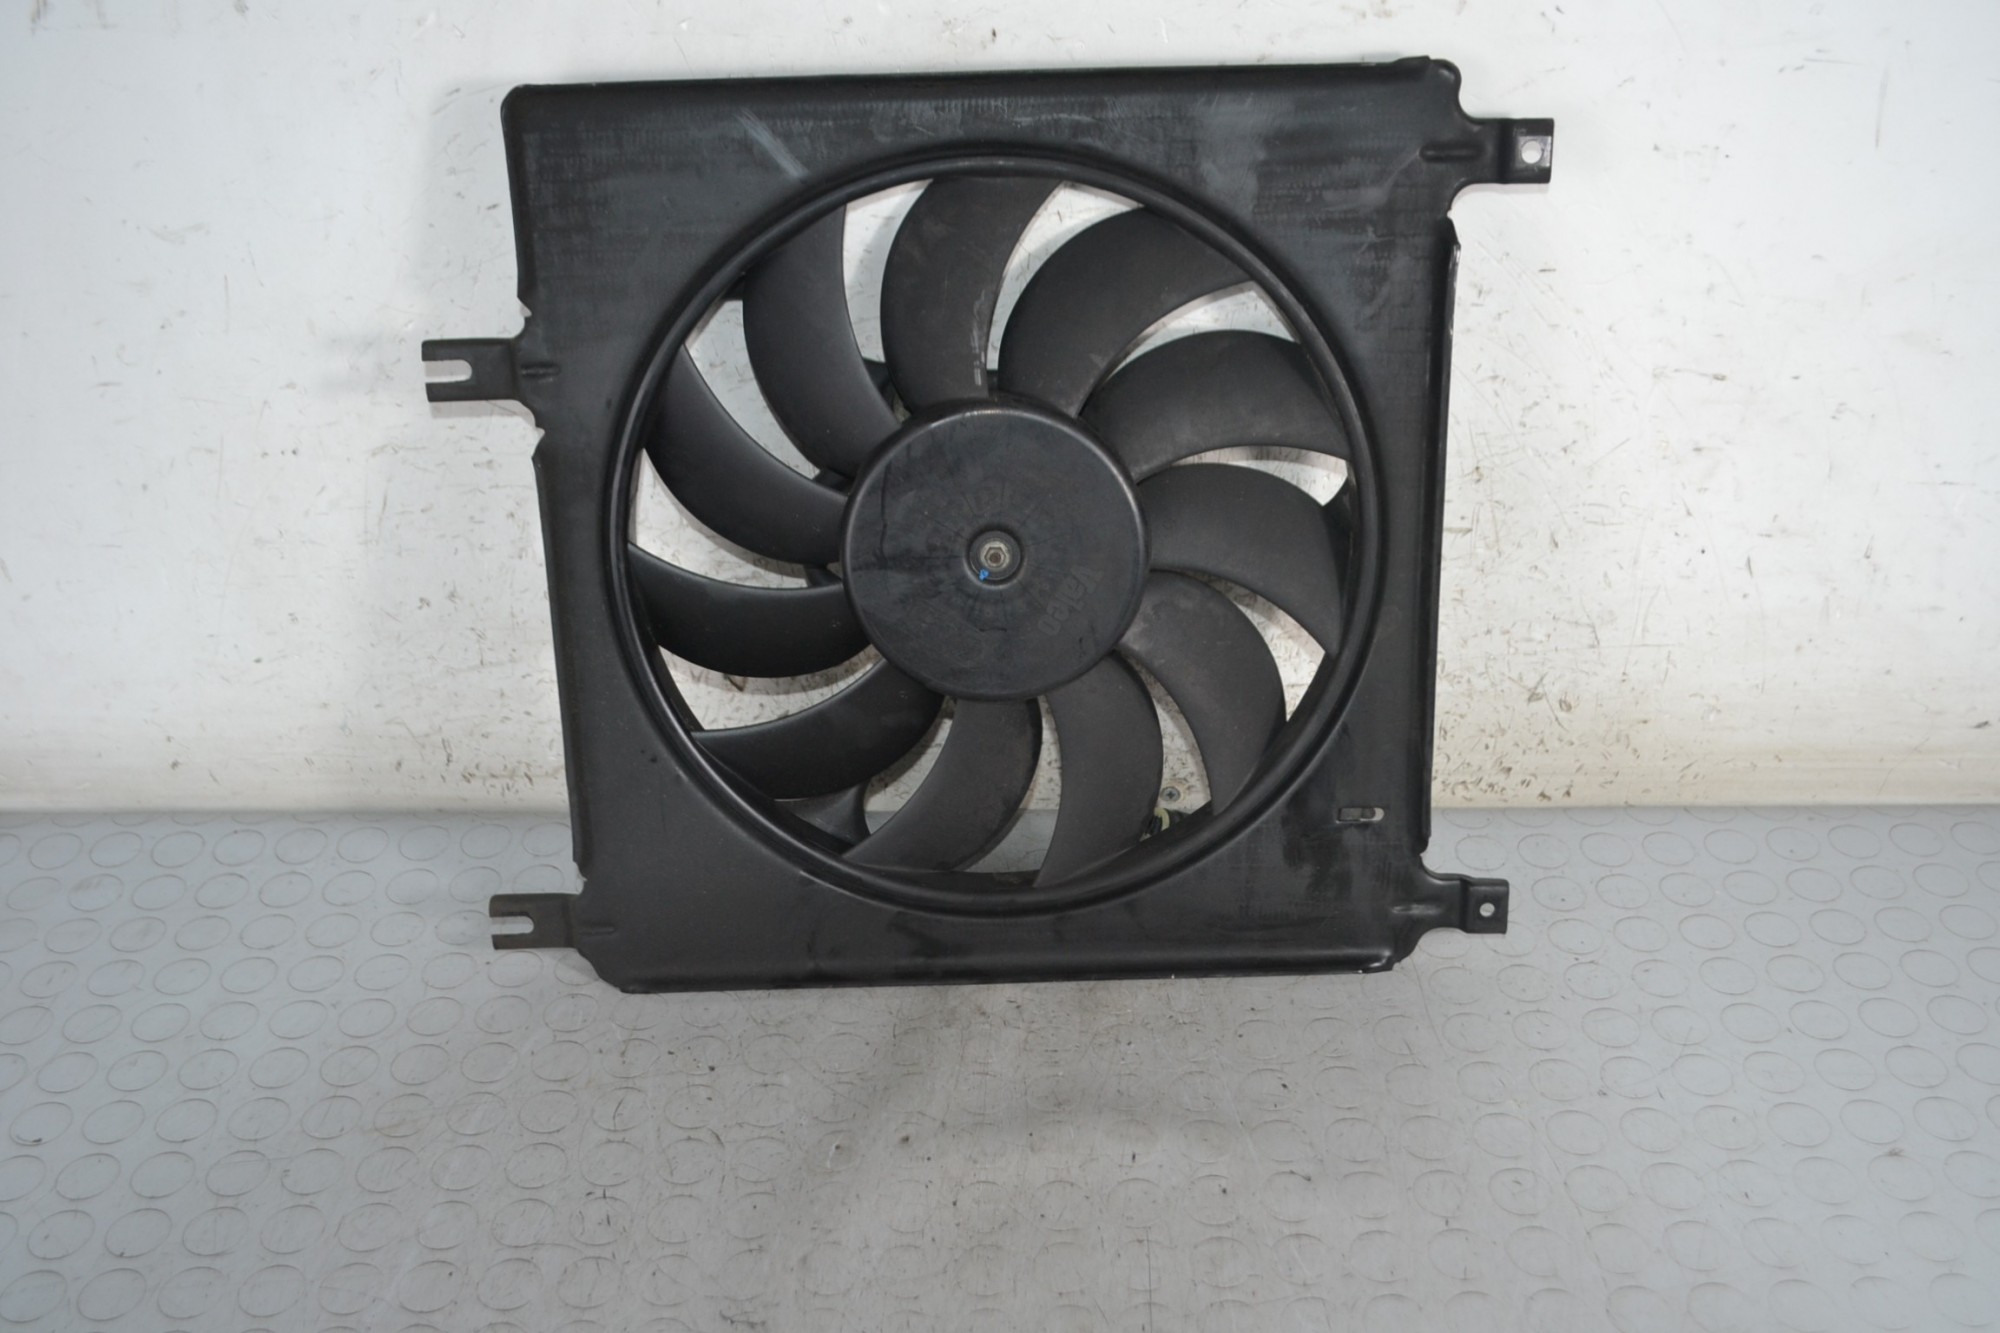 Elettroventola radiatore Opel Agila A Dal 2000 al 2007 Cod 861694VV  1679909700565